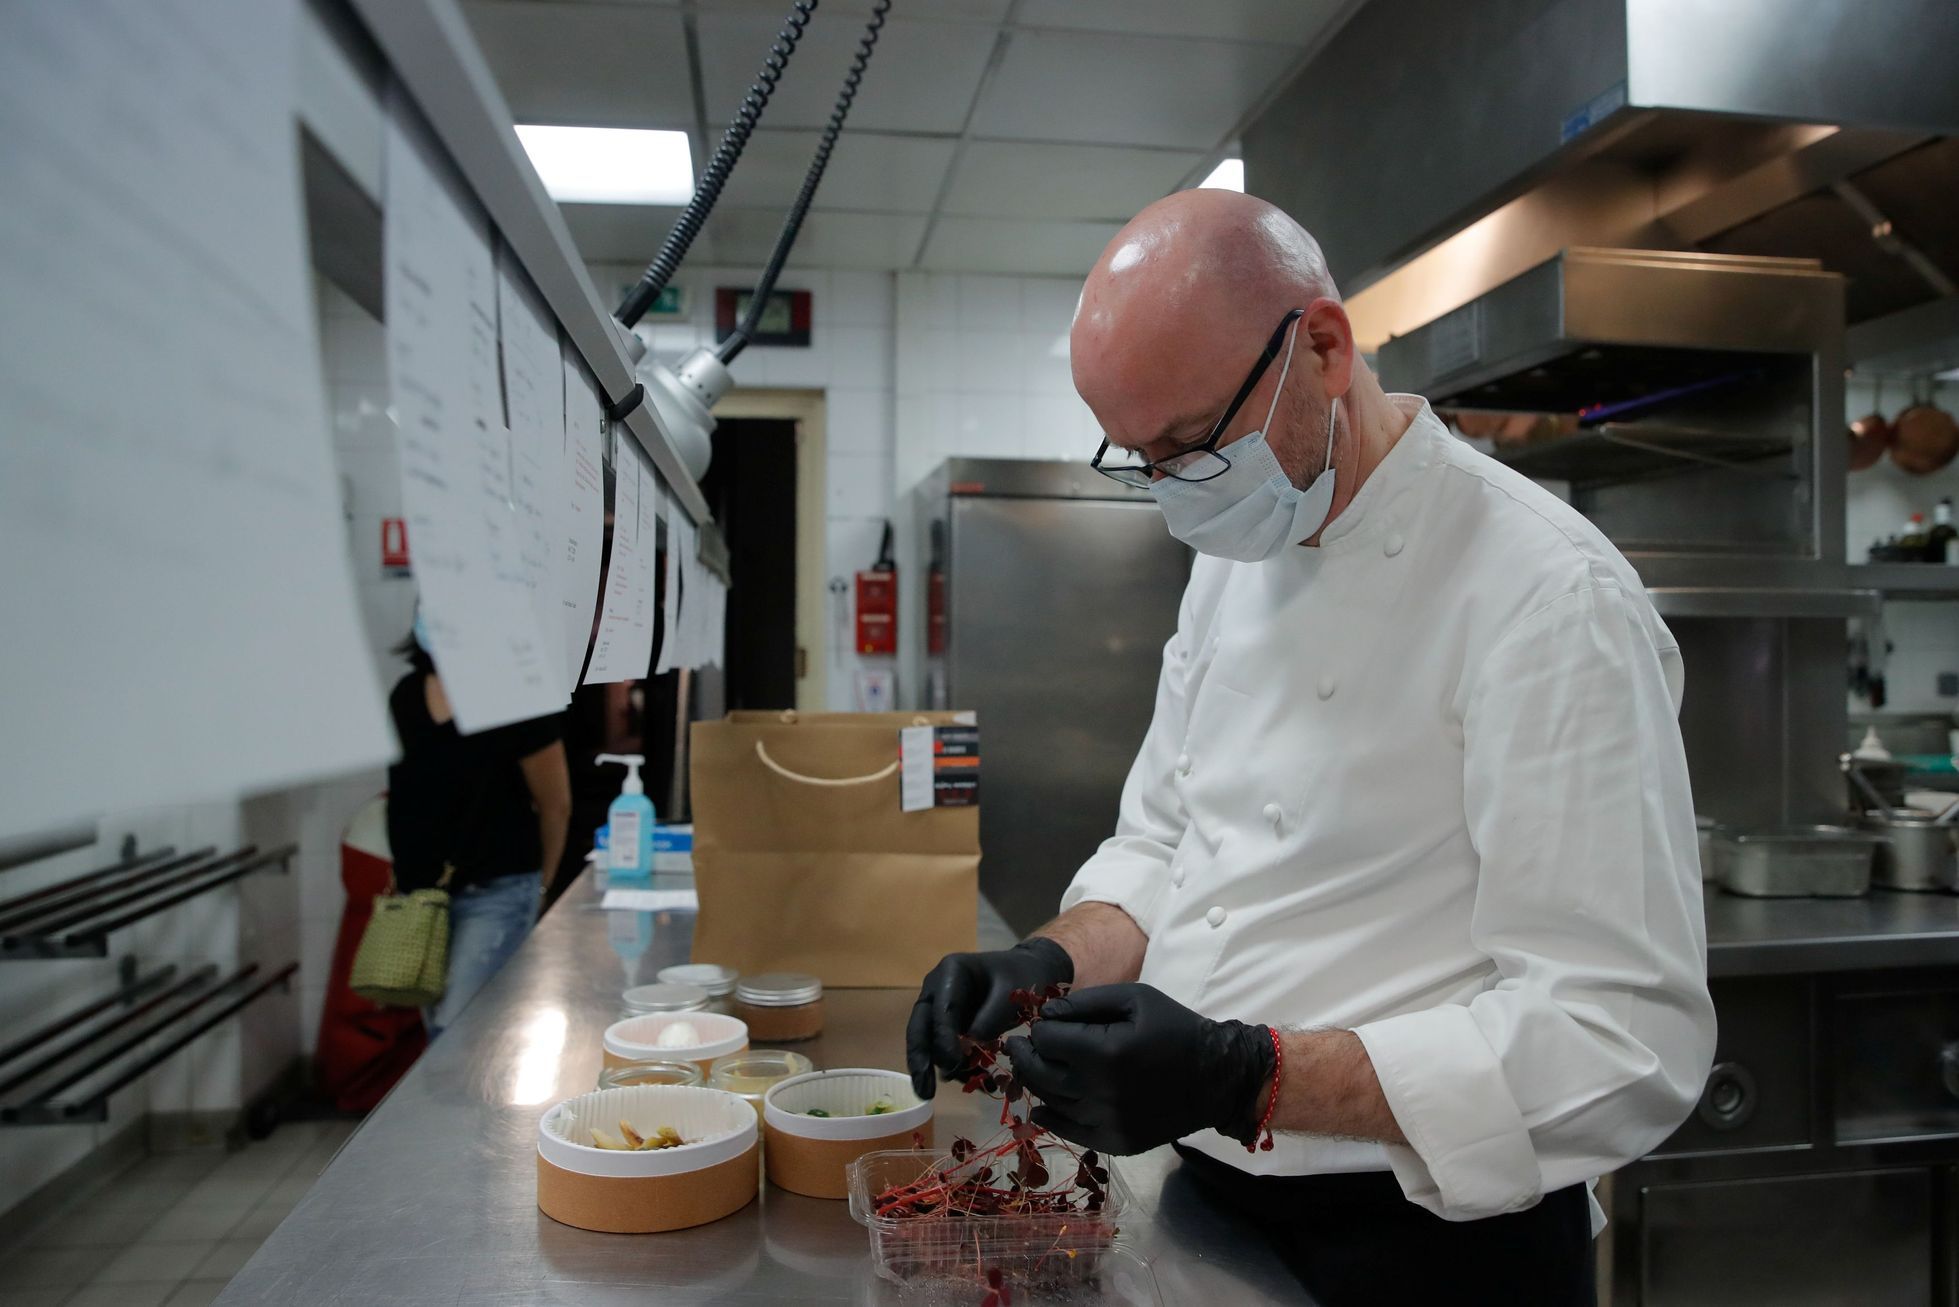 Michelinská restaurace La Chiberta během pandemie servíruje své speciality v rámci speciálního rozvozu jídla